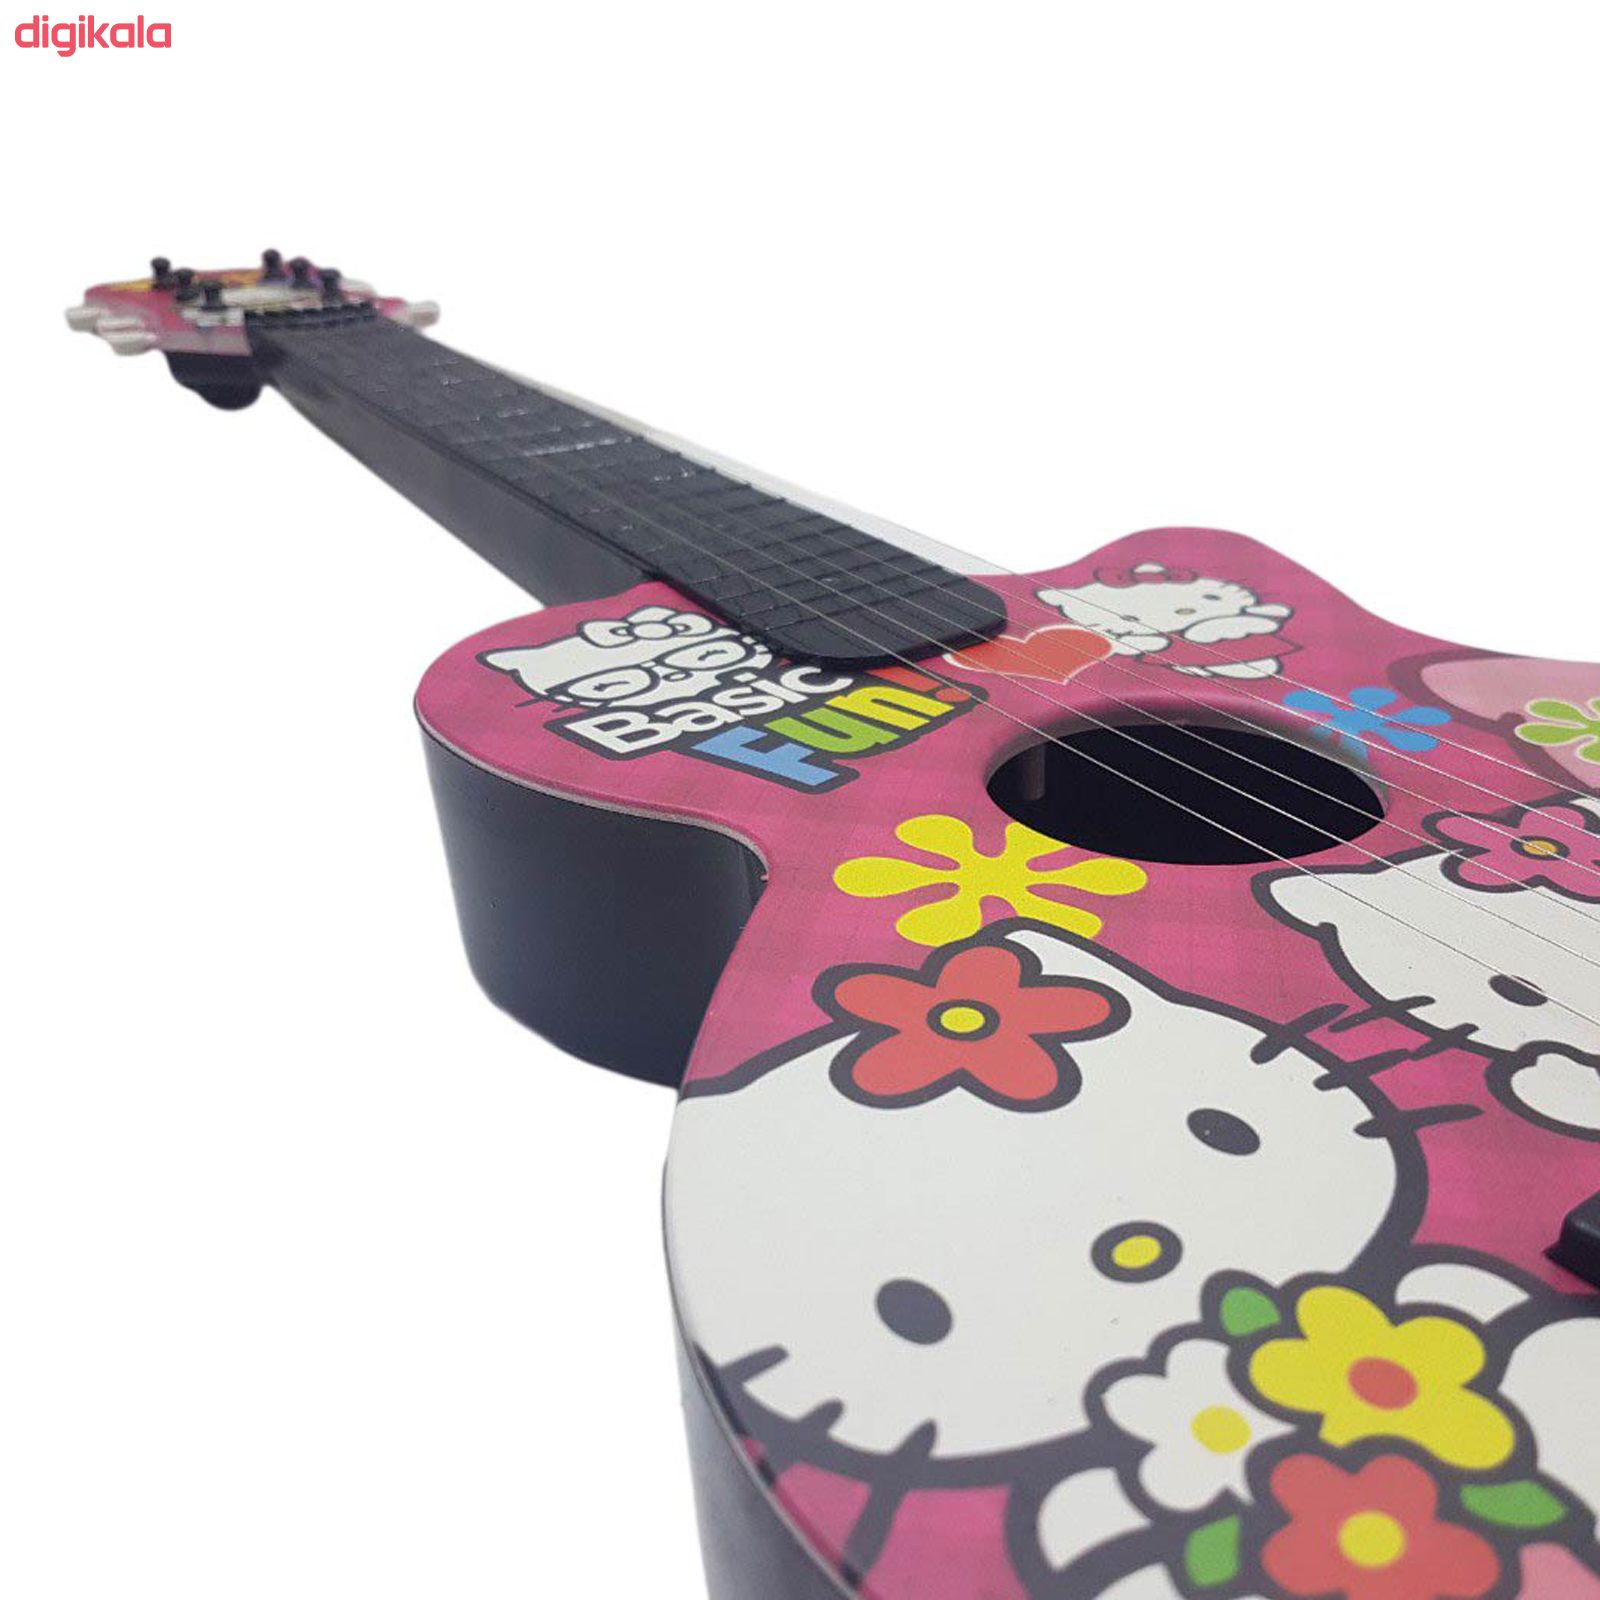  گیتار اسباب بازی مدل S90 طرح Hello Kitty